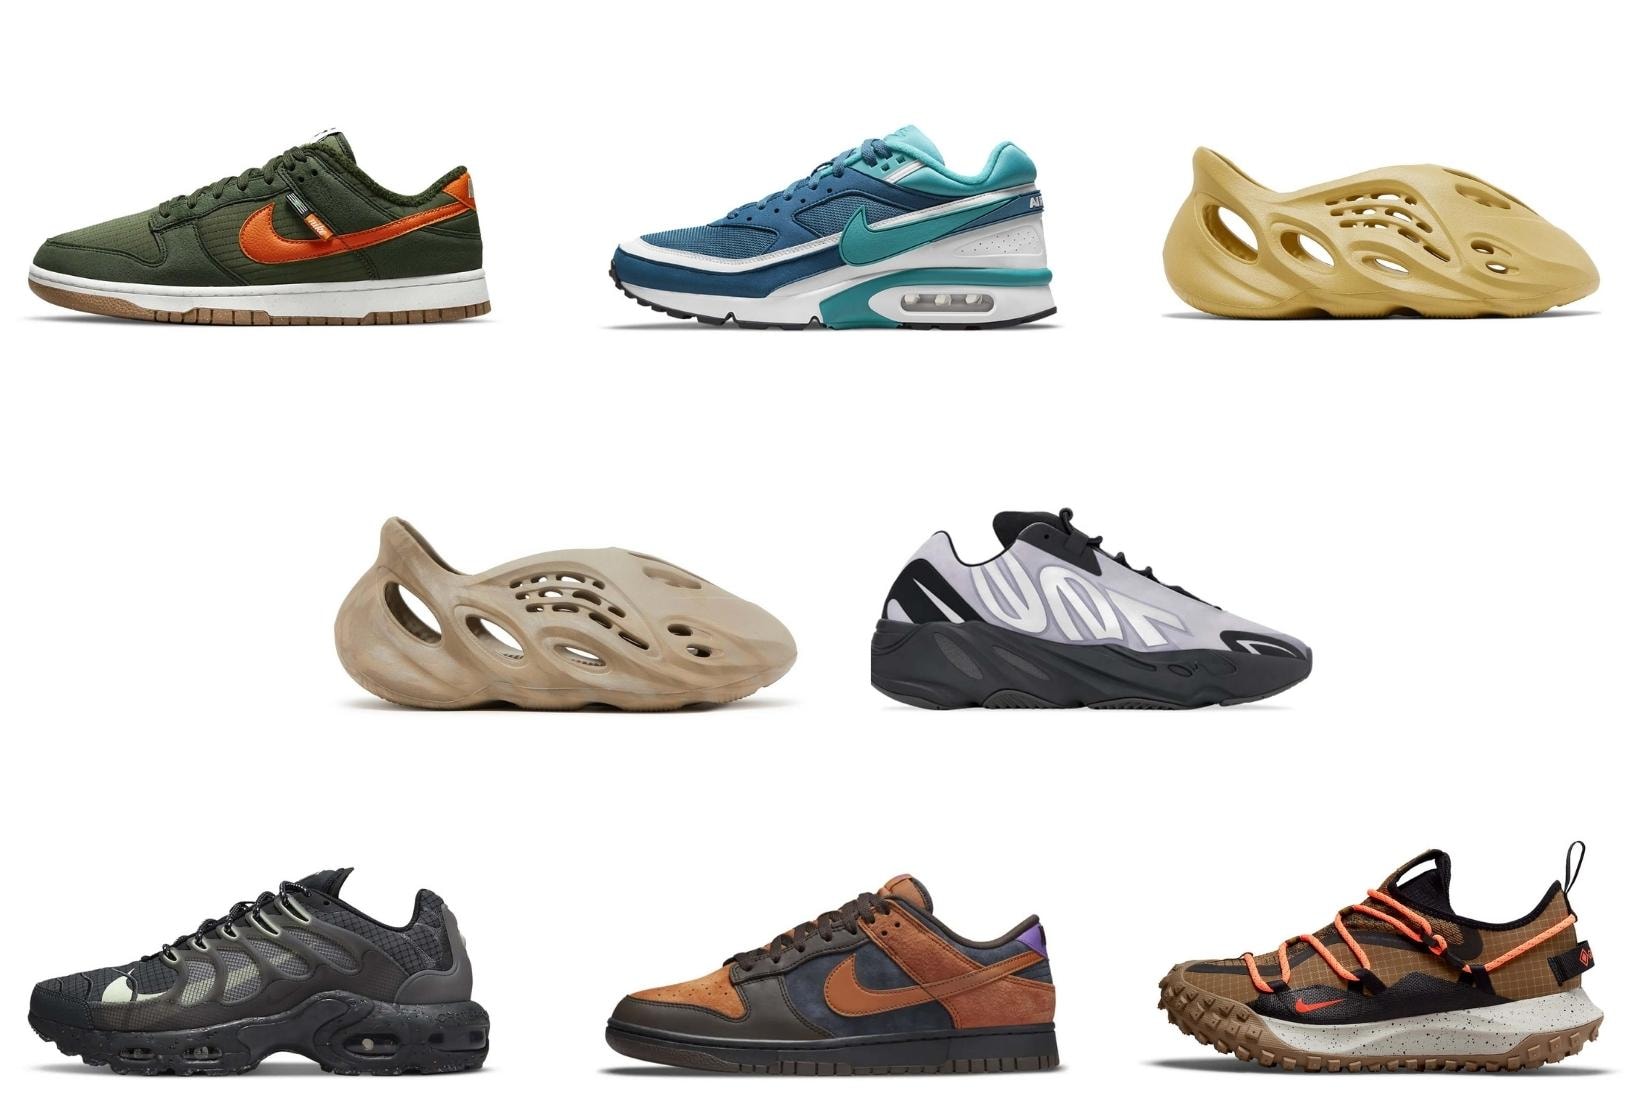 Sneaker Release Calendar Nike Dunk Yeezy adidas Foam Runner Price Release Info